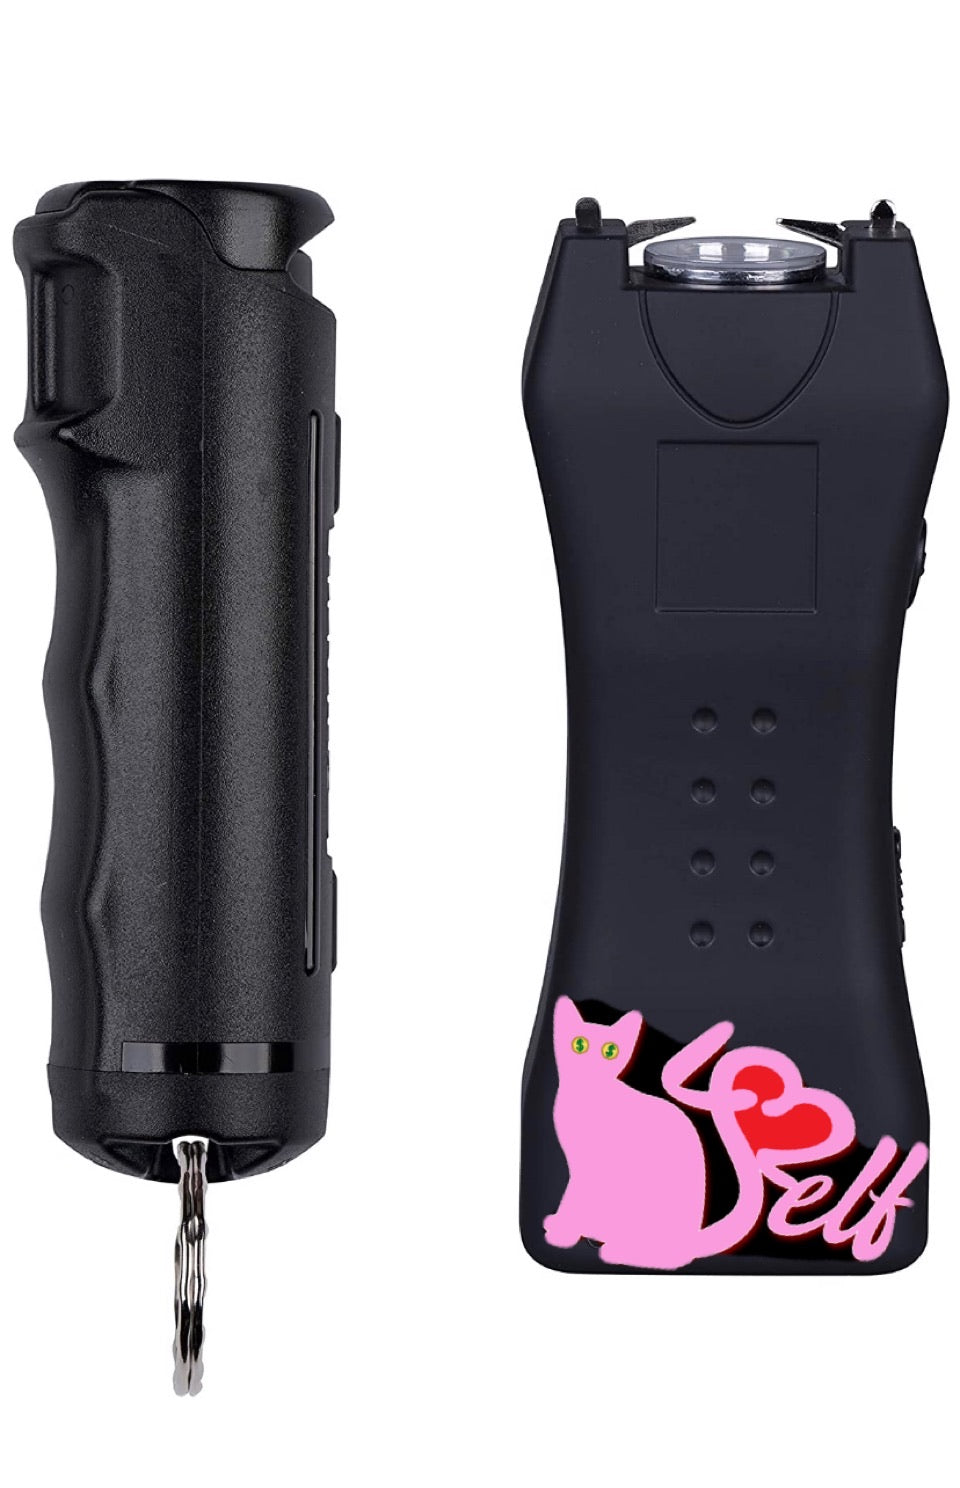 pussy for self pepper spray taser kit available black